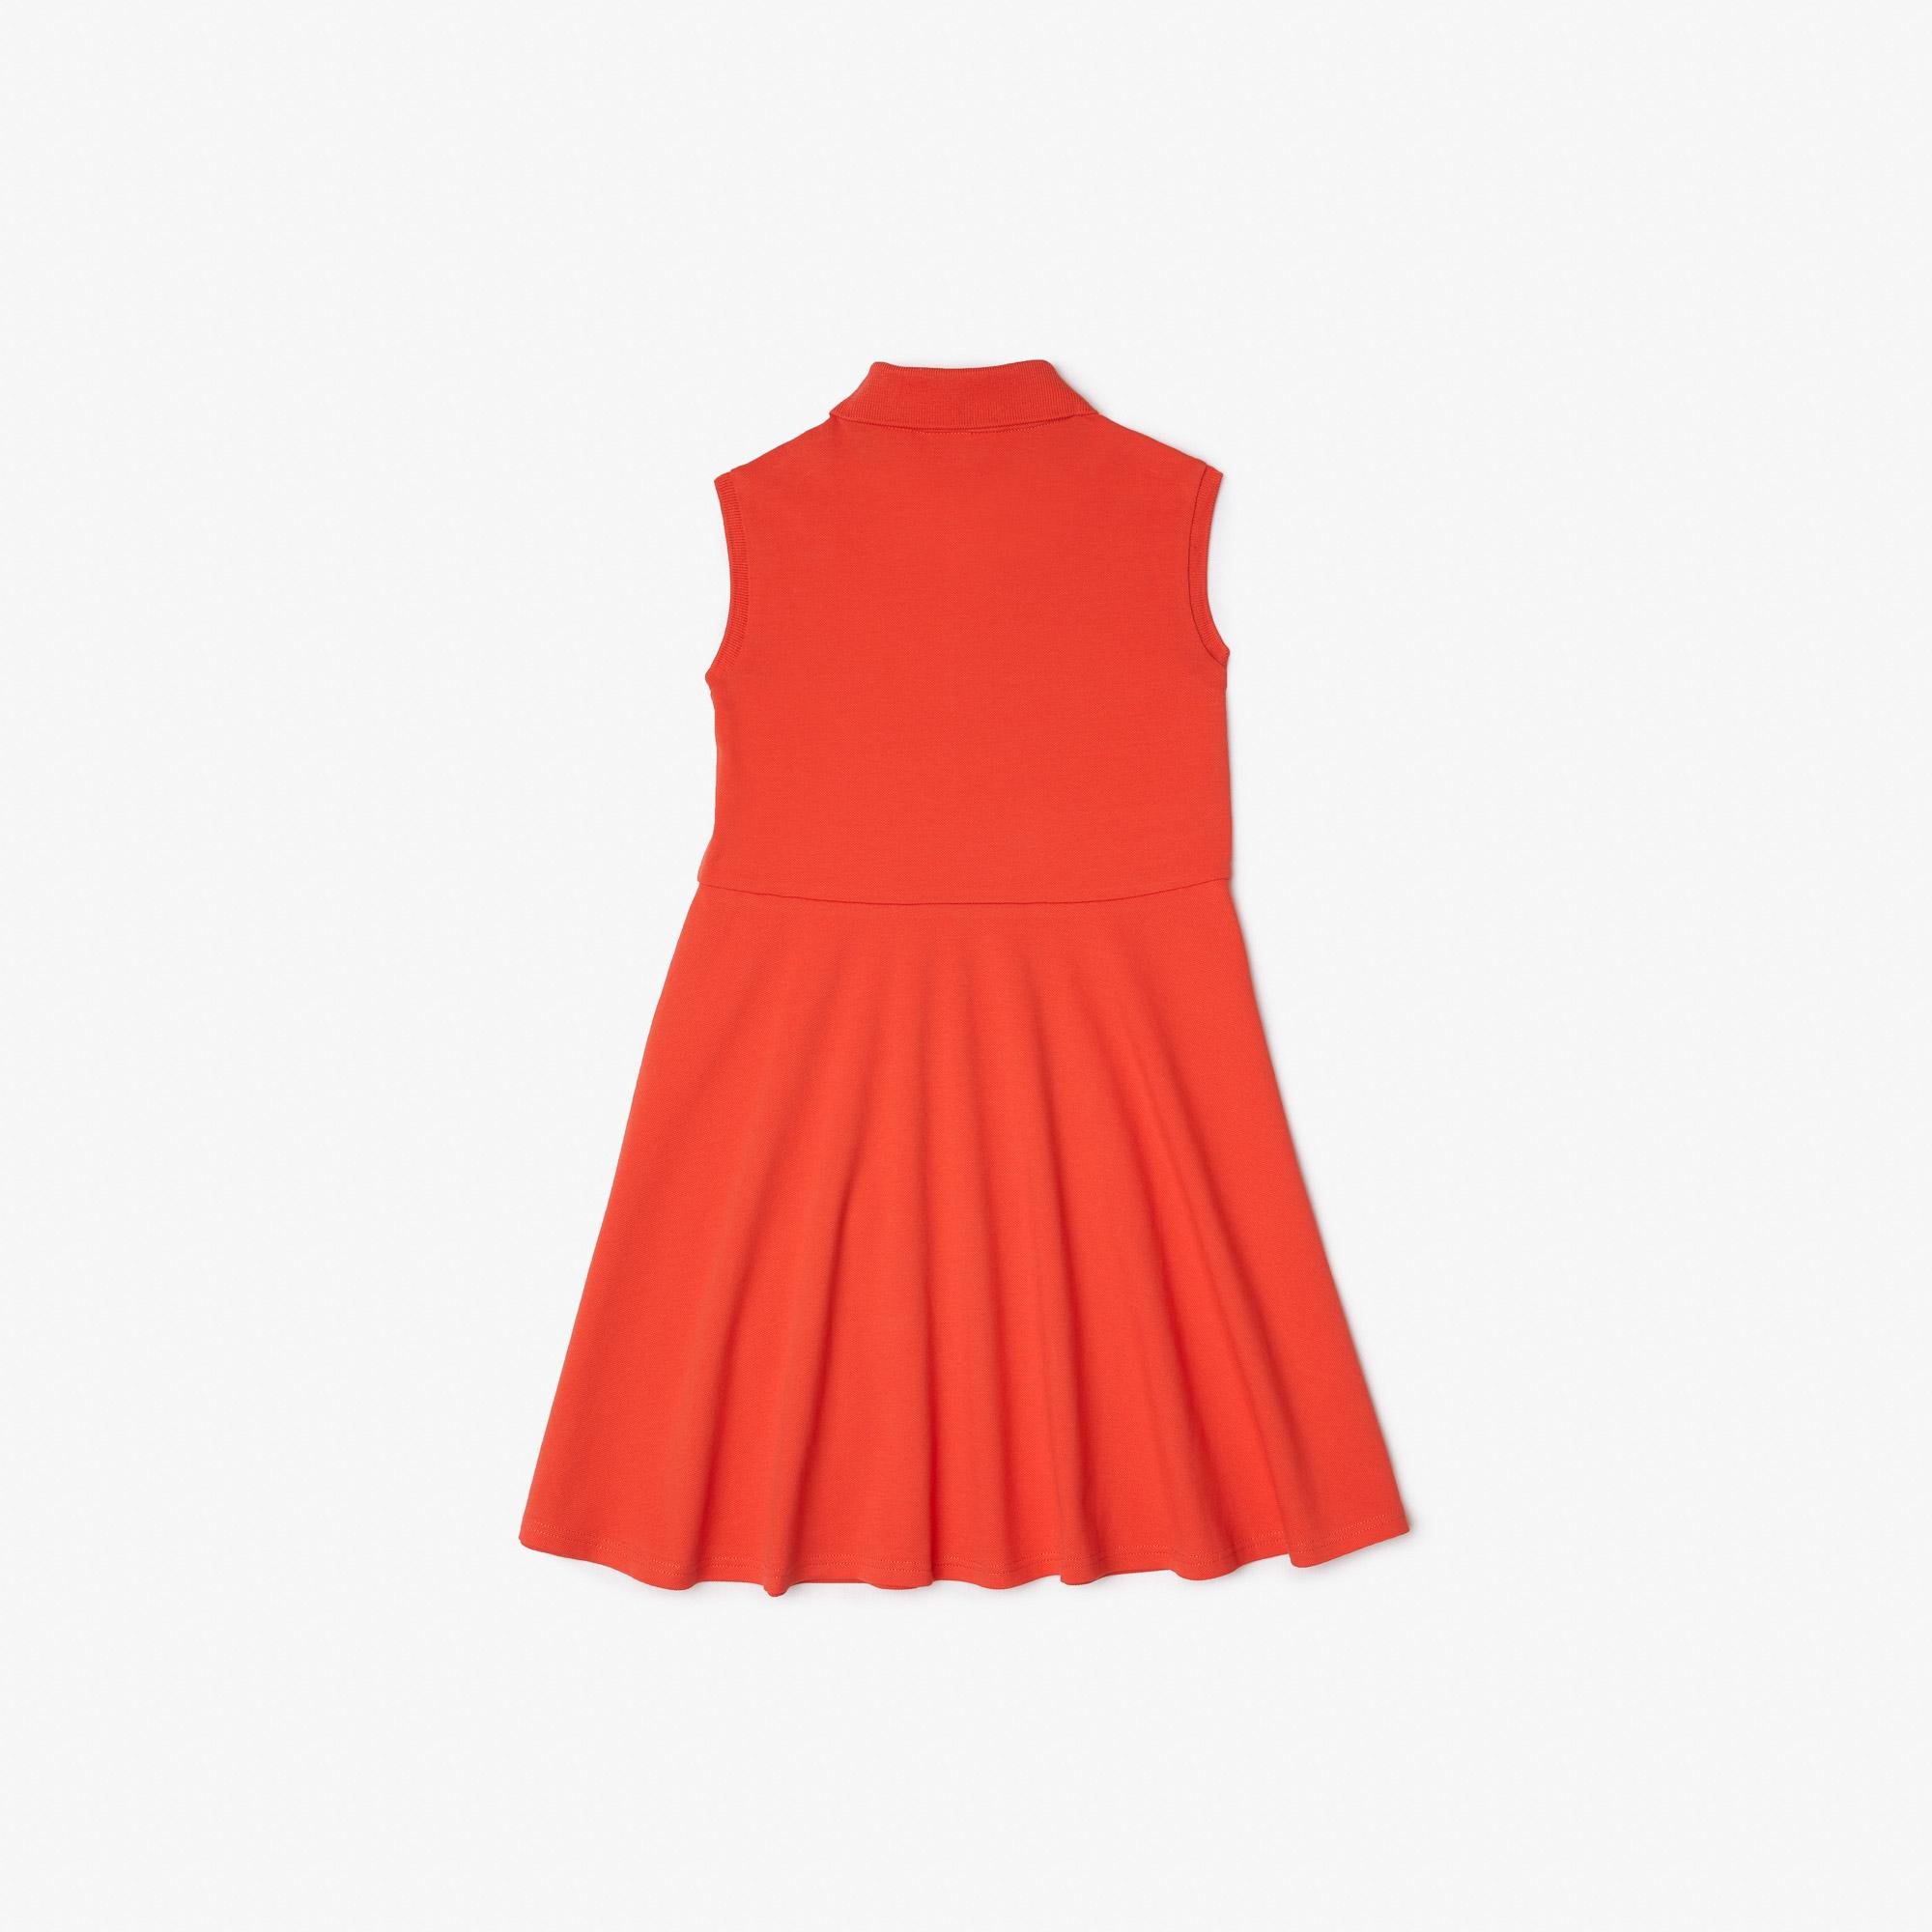 Lacoste dziewczęca sukienka polo typu fit and flare z elastycznej piki